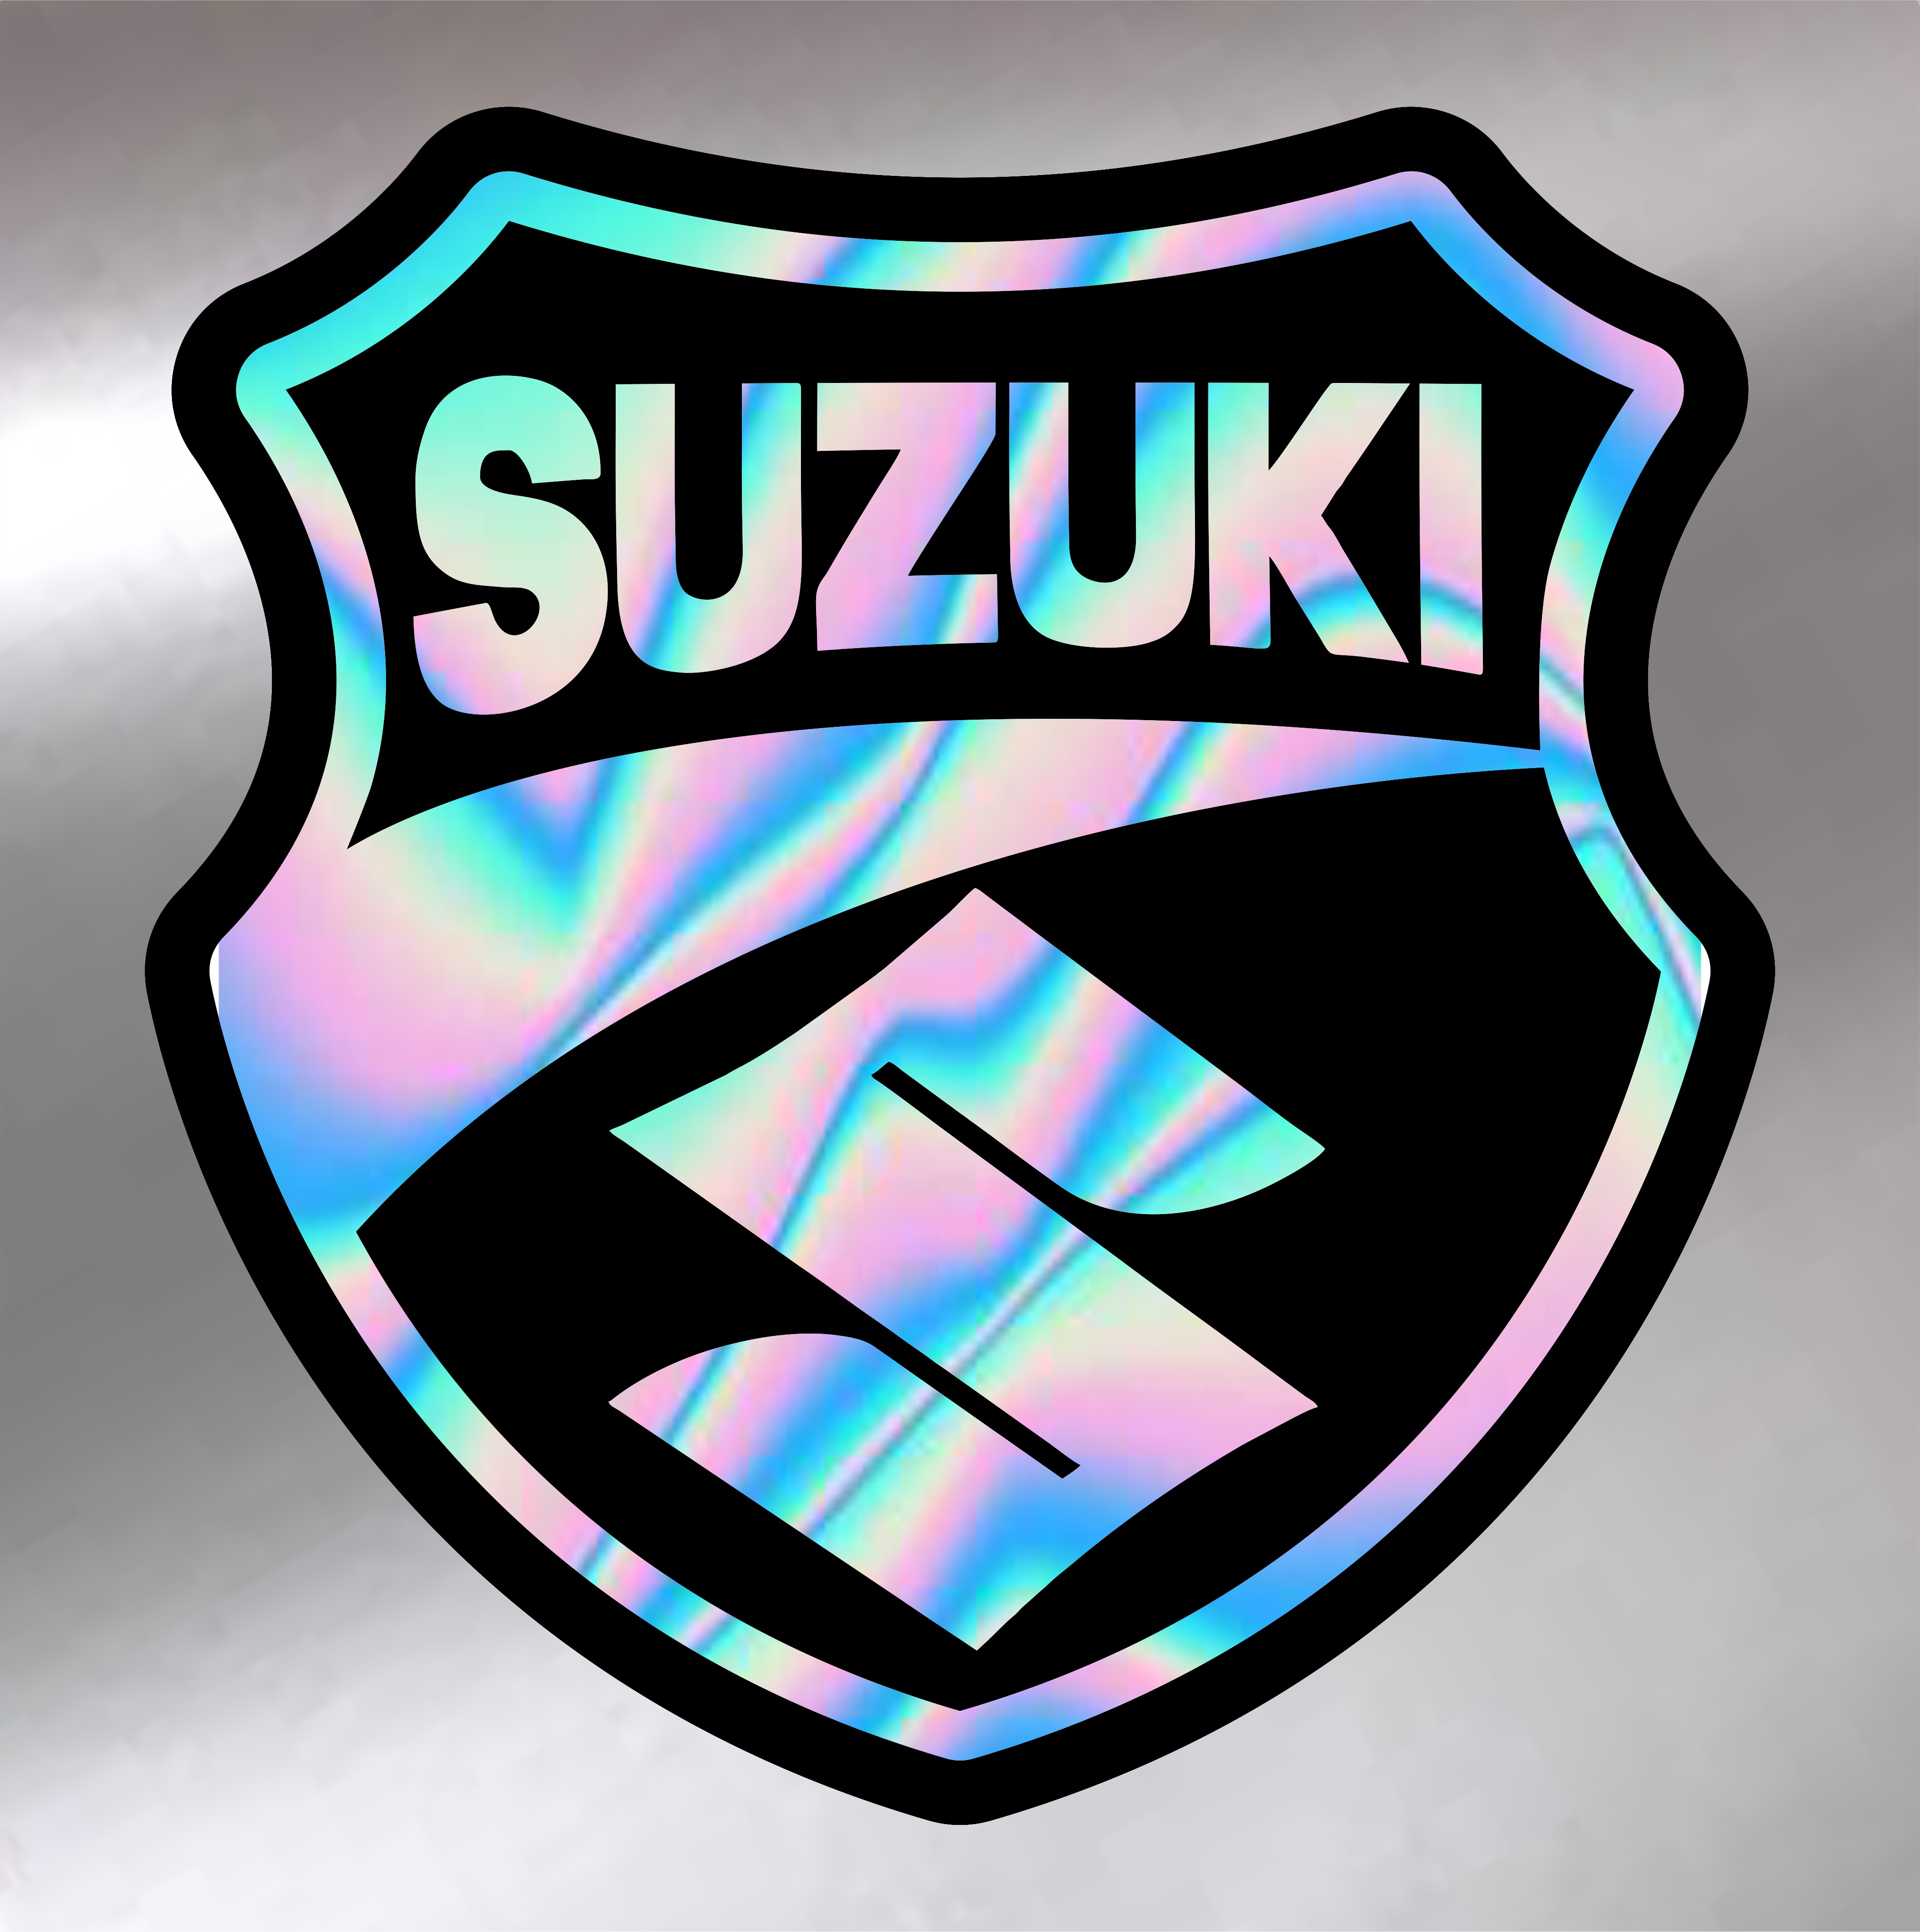 suzuki logo design